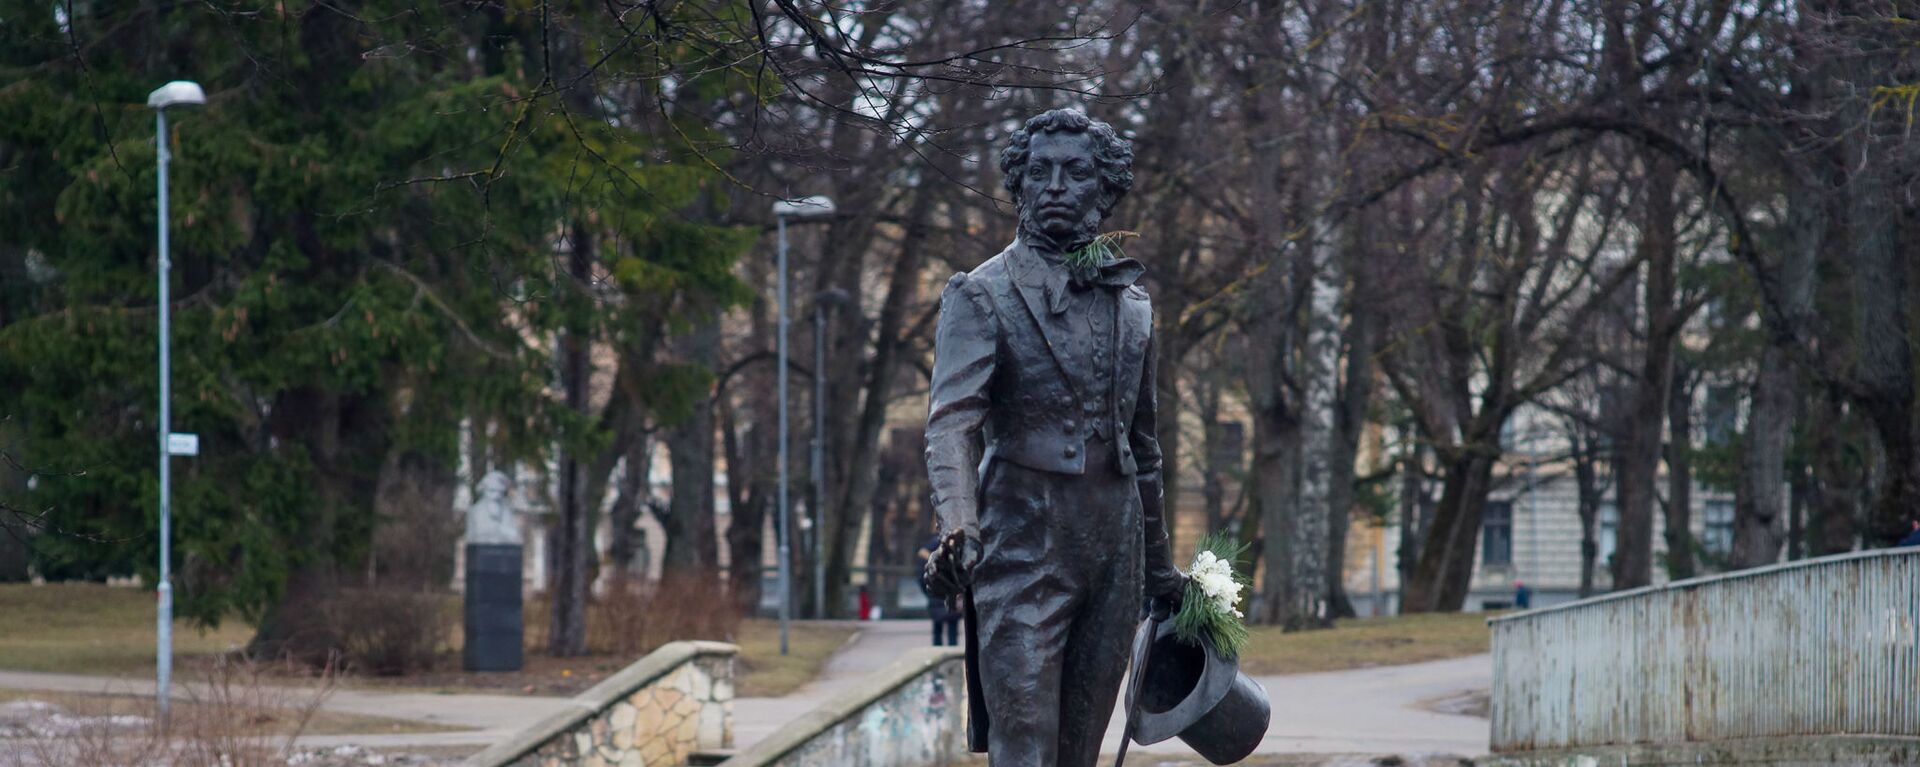 Памятник Александру Пушкину в Риге - Sputnik Latvija, 1920, 24.04.2020